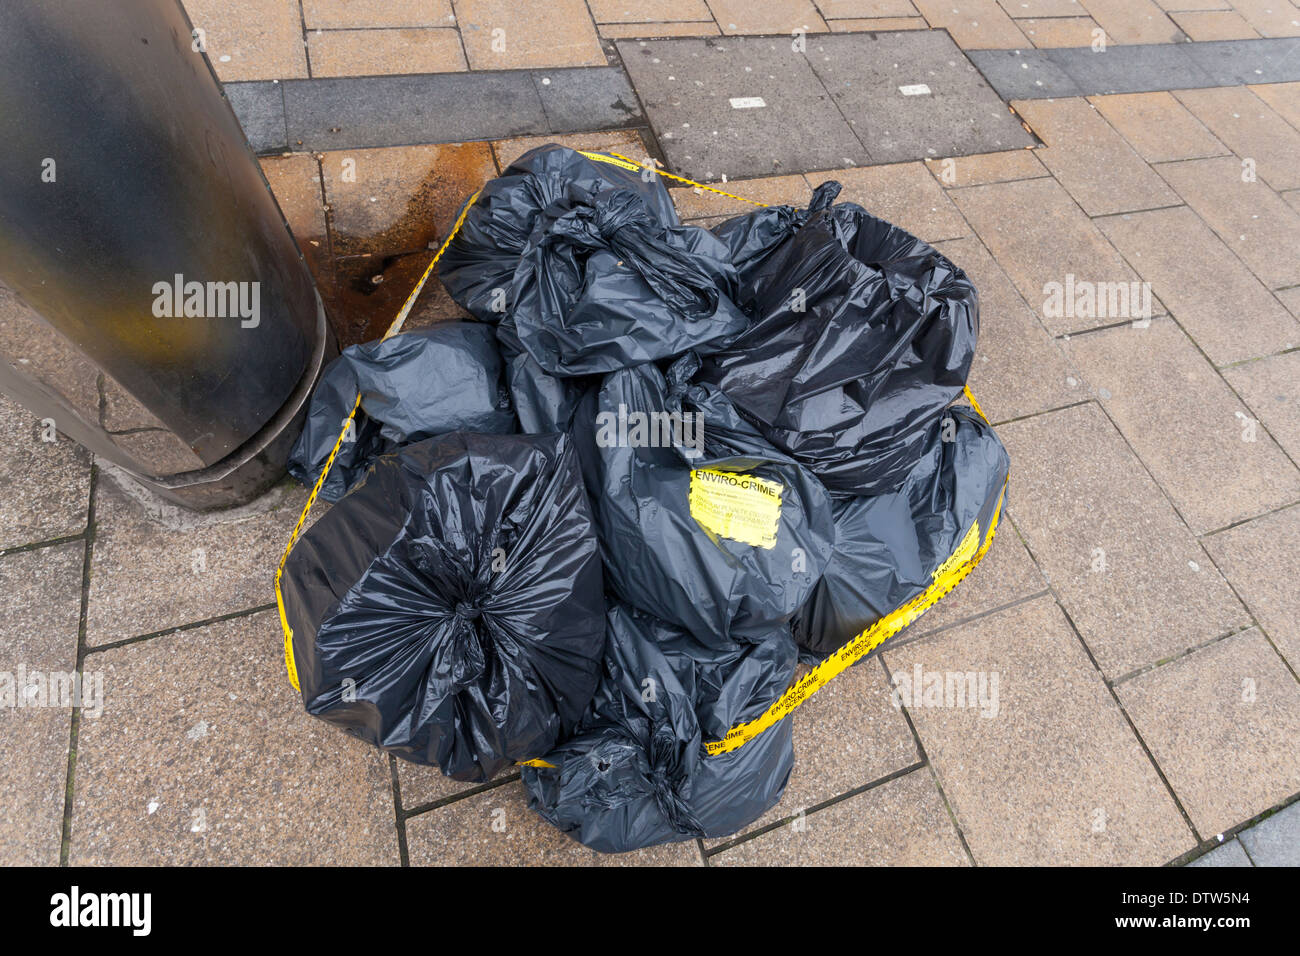 Umwelt Tatort. Schuttplatz oder illegal entsorgt. Säcke mit Müll auf einer Straße im Stadtzentrum von Sheffield, England, Großbritannien Stockfoto